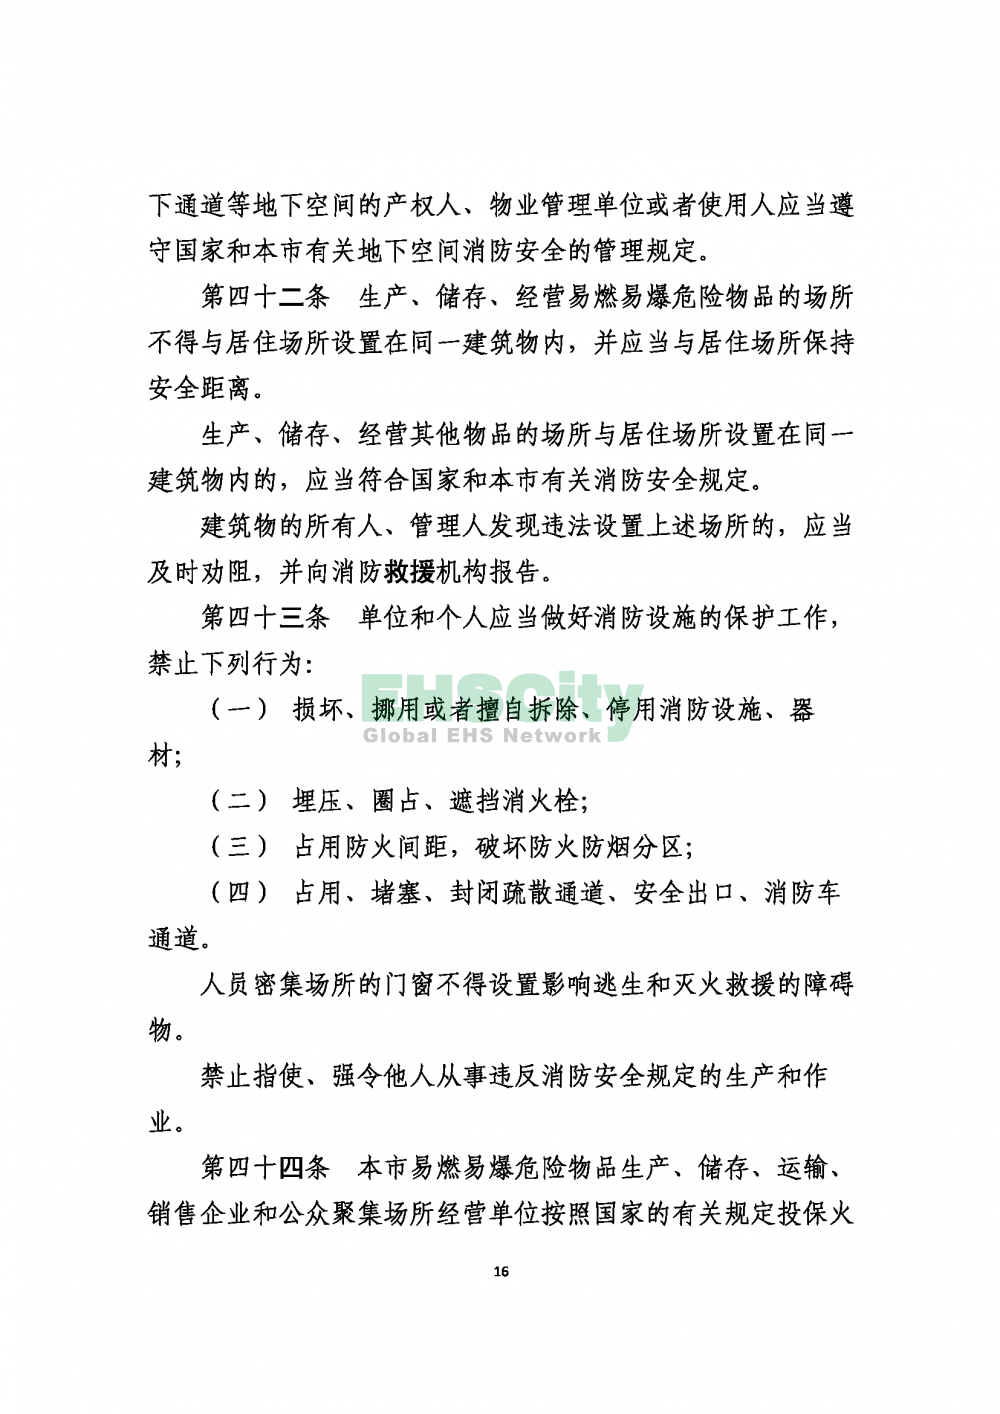 2020版上海消防条例_页面_16